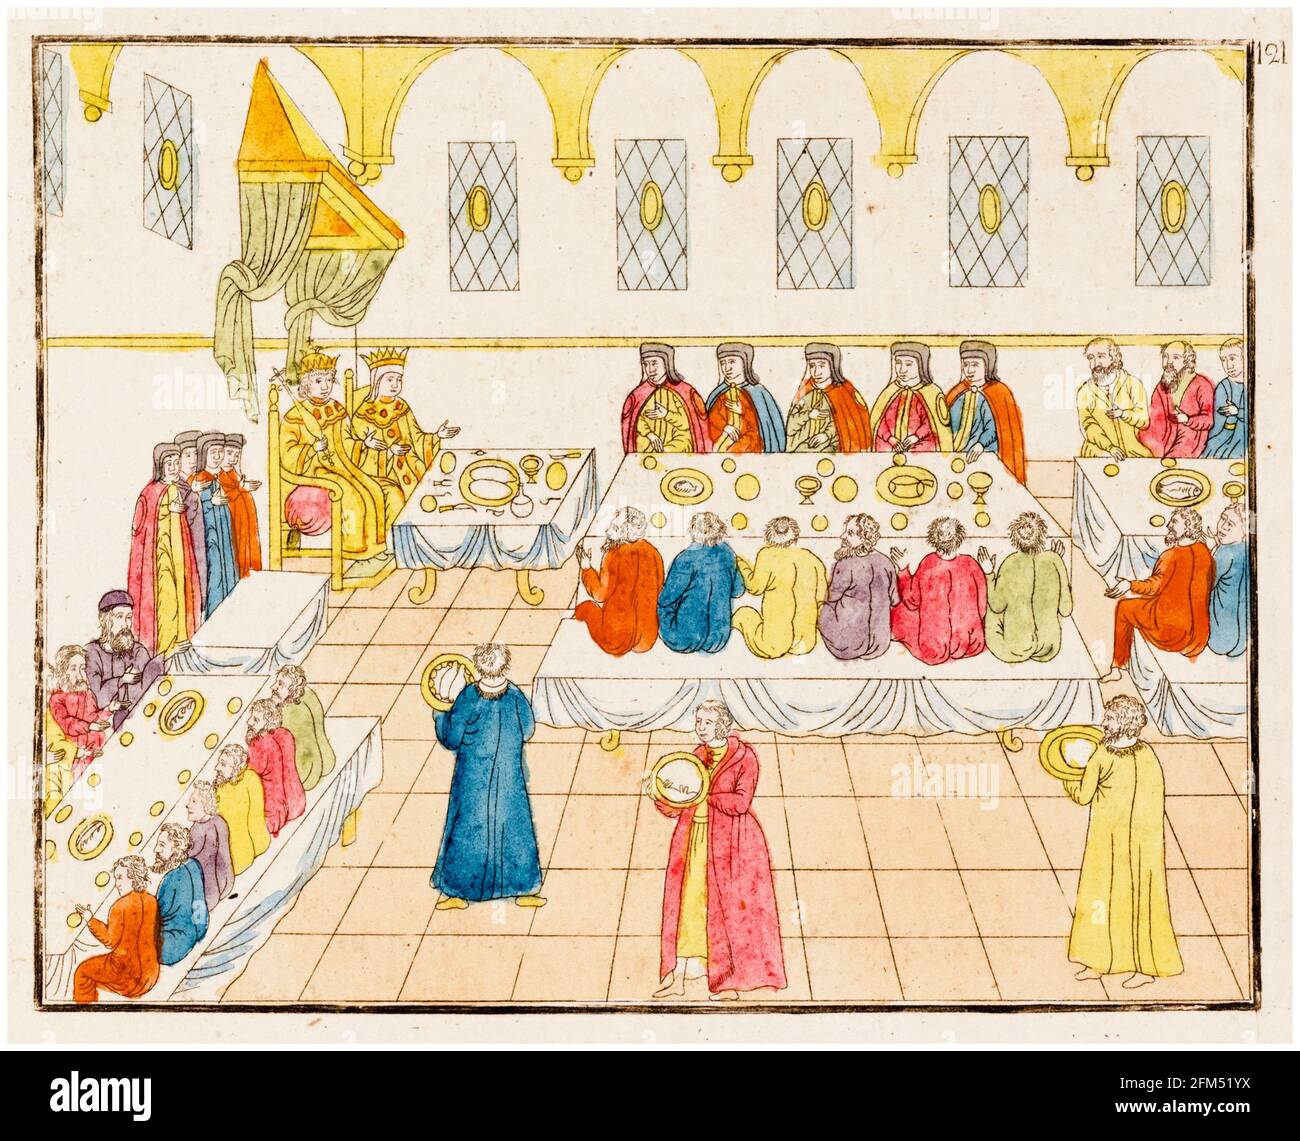 Banquet royal de mariage, avec Tsar Michael I de Russie, (1596-1645), et Tsarina Eudoxia Streshnyova, (1608-1645), illustration vers 1810 Banque D'Images